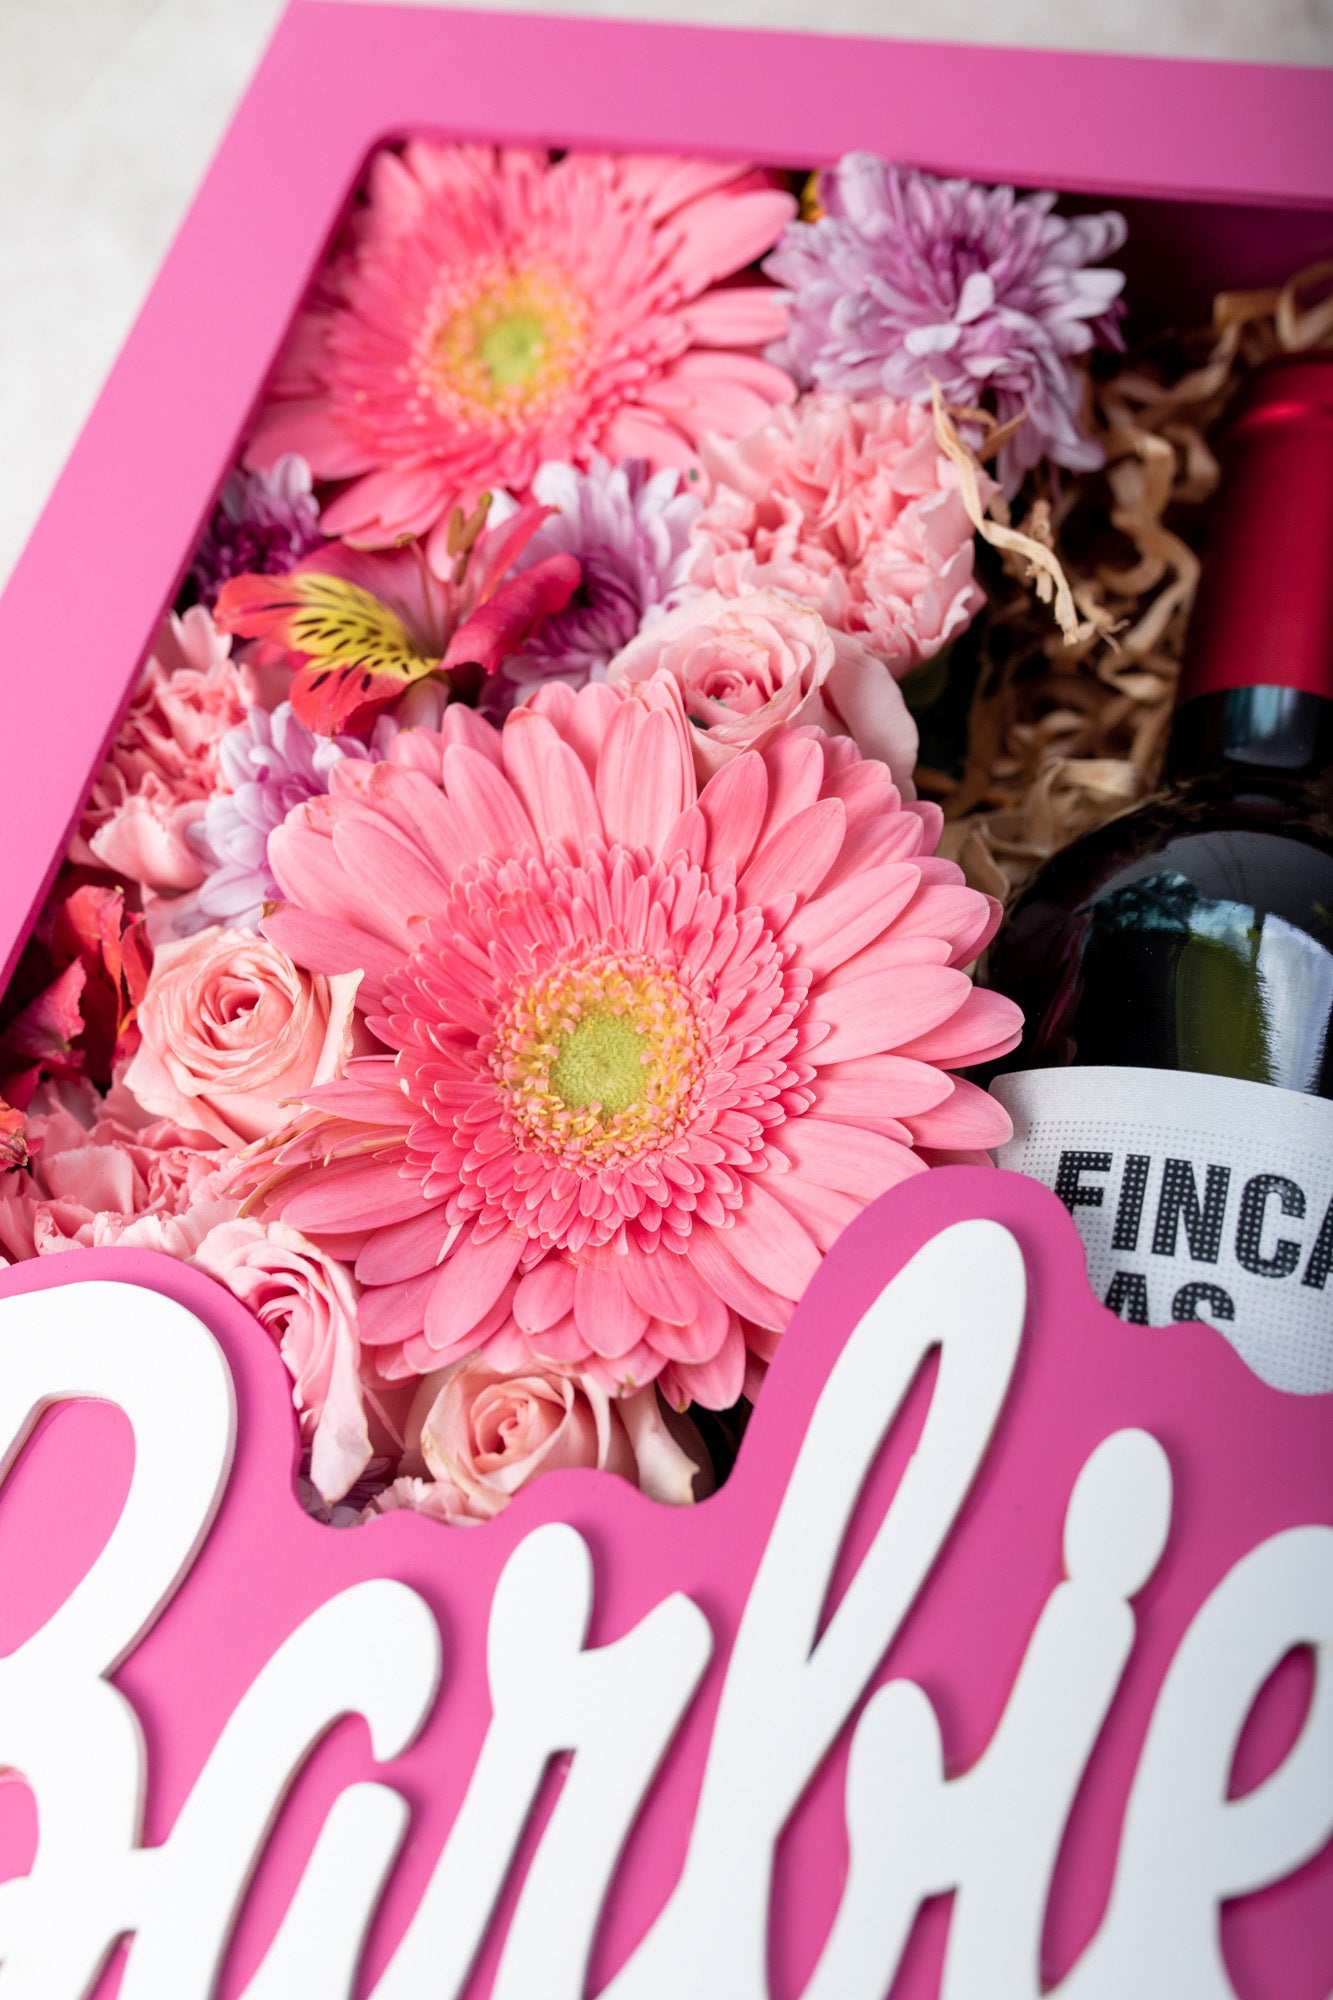 Barbie Girl con Vino - Caja de Flores y Vino